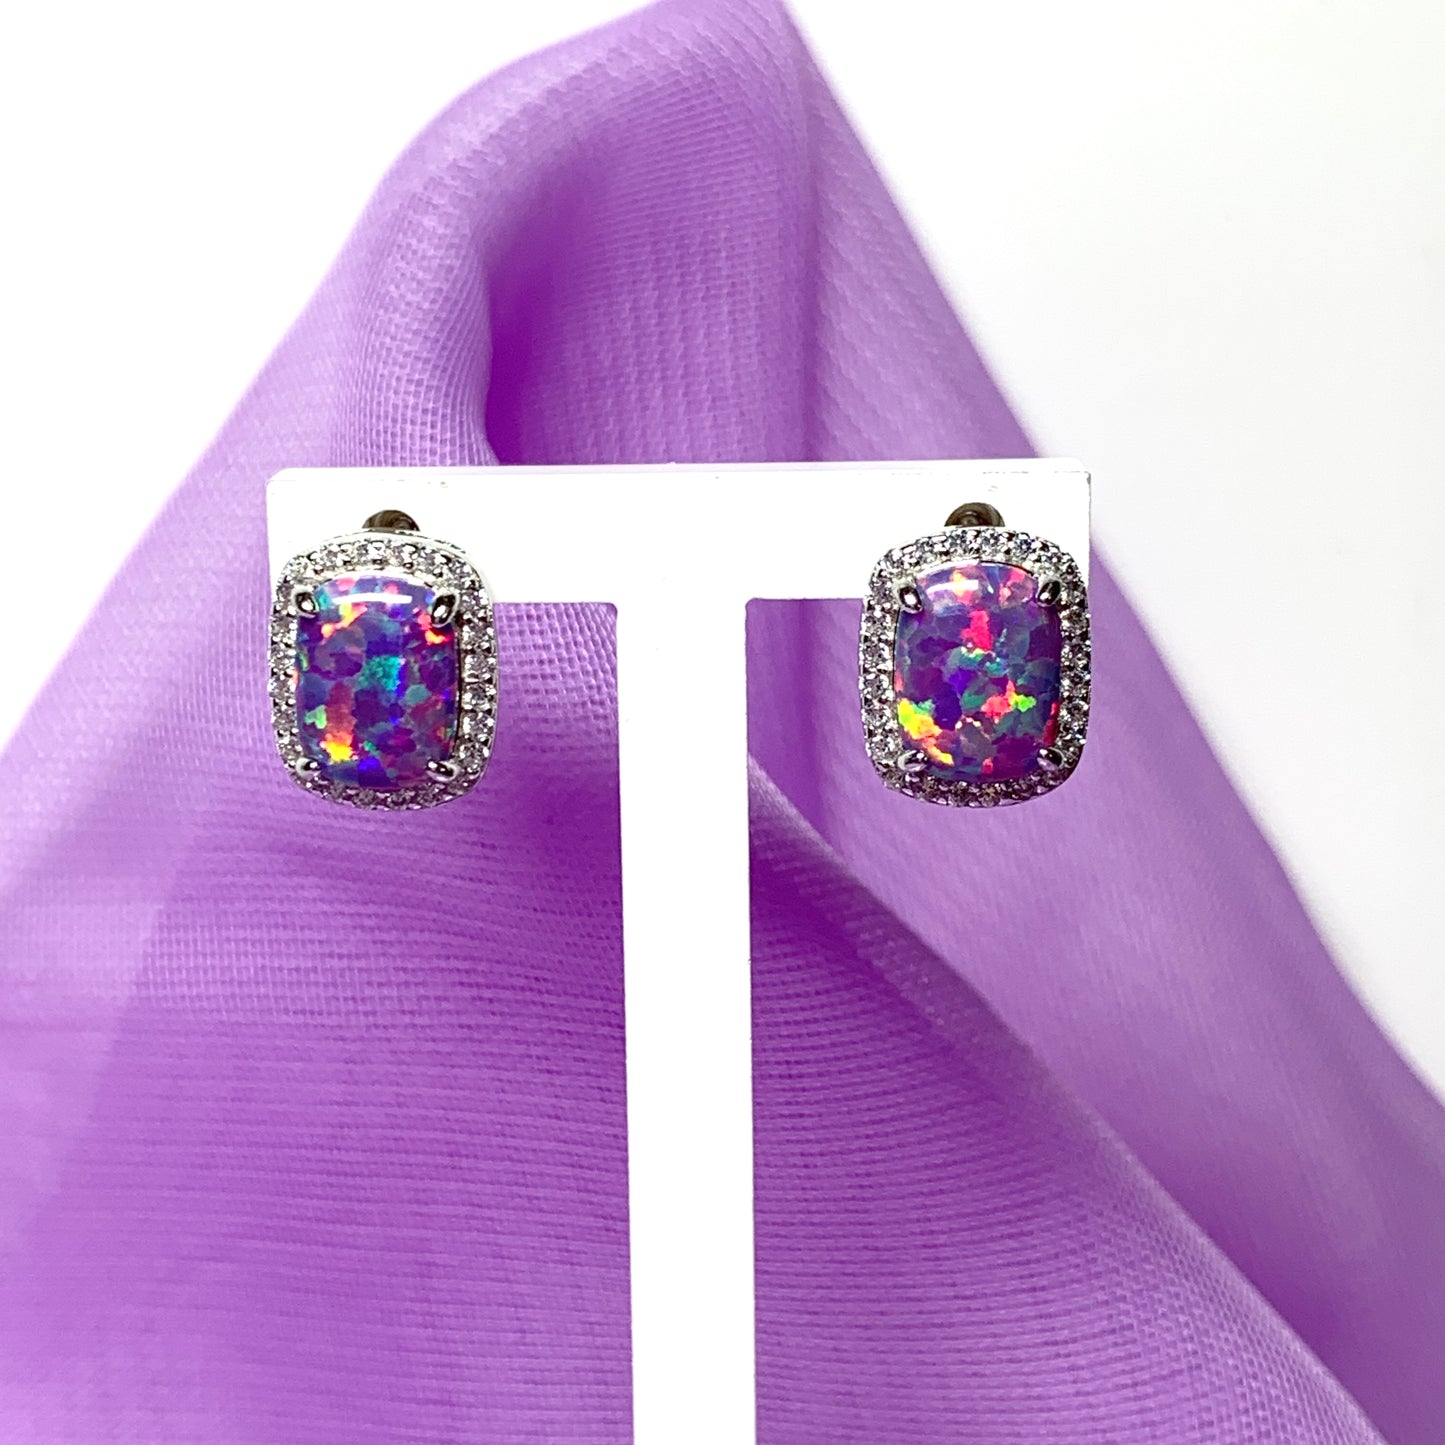 Purple opal earrings stud square sterling silver cubic zirconia